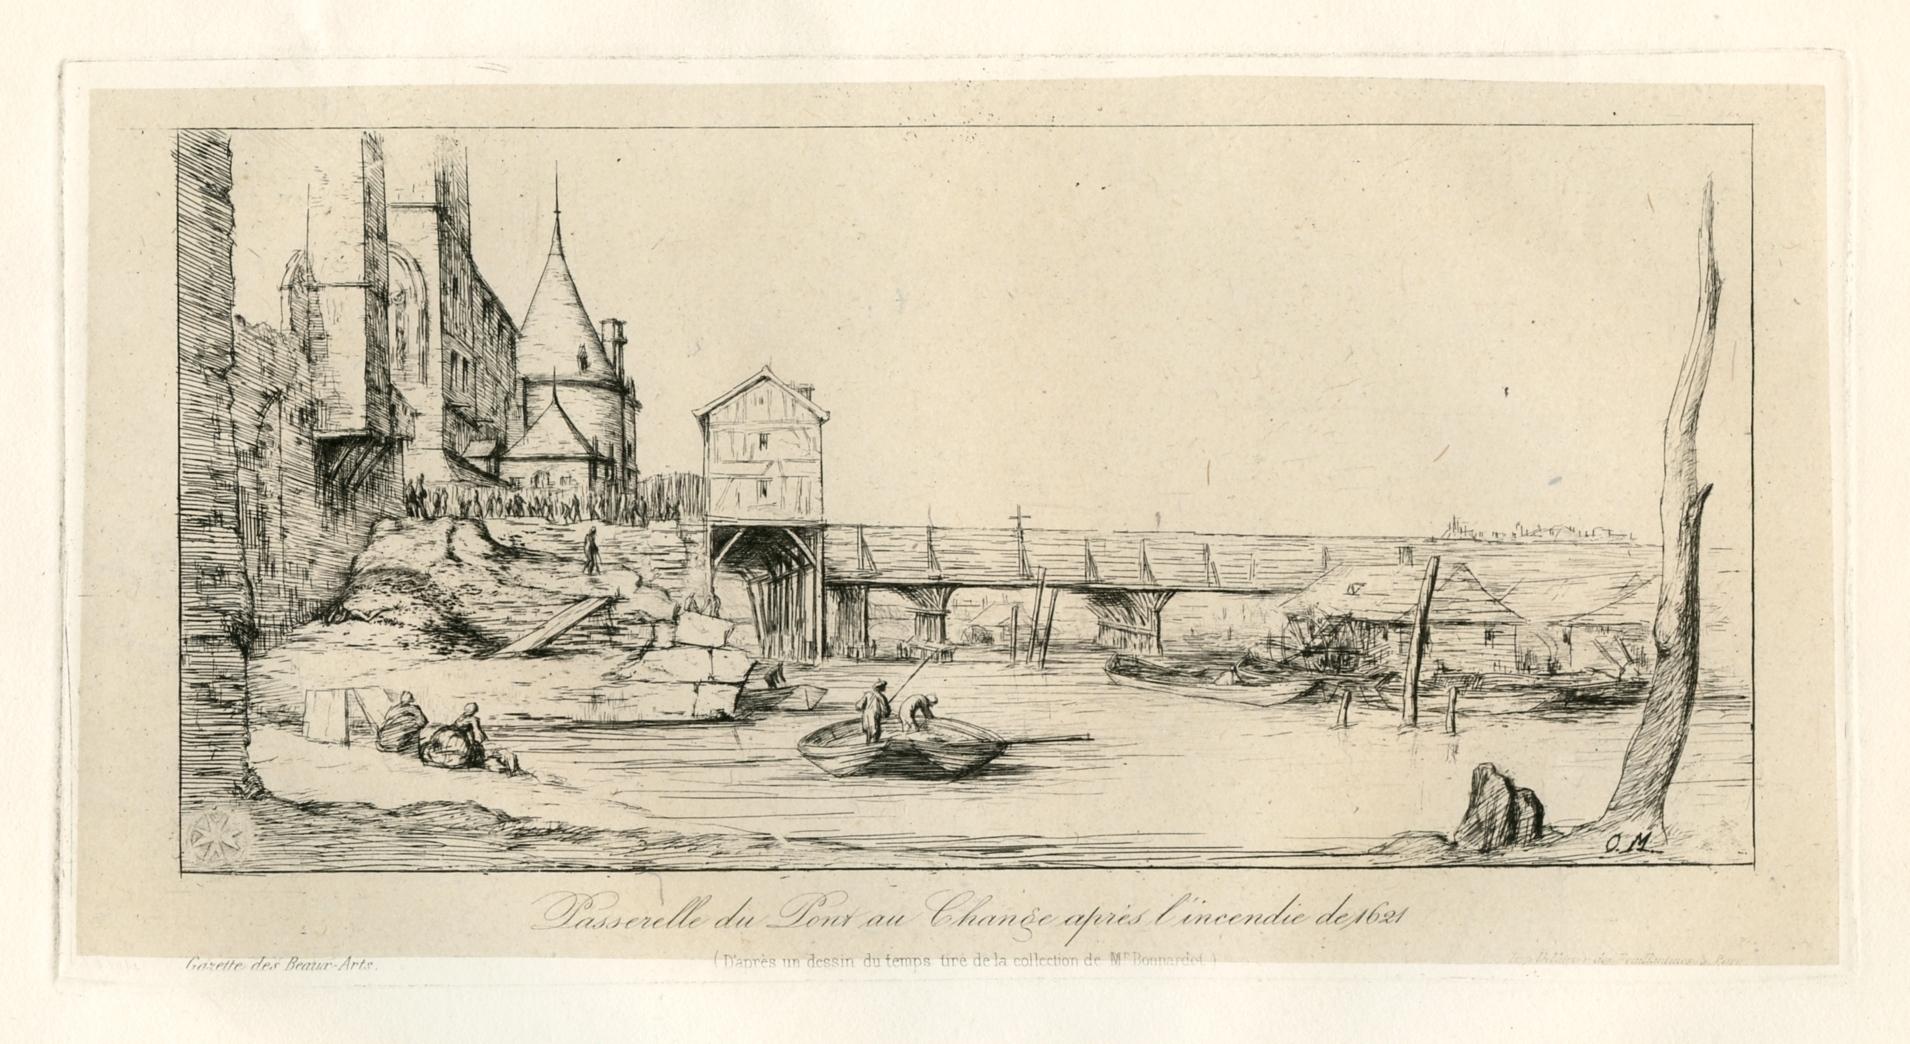 Charles Meryon Portrait Print - "Passerelle du Pont au Change" original etching